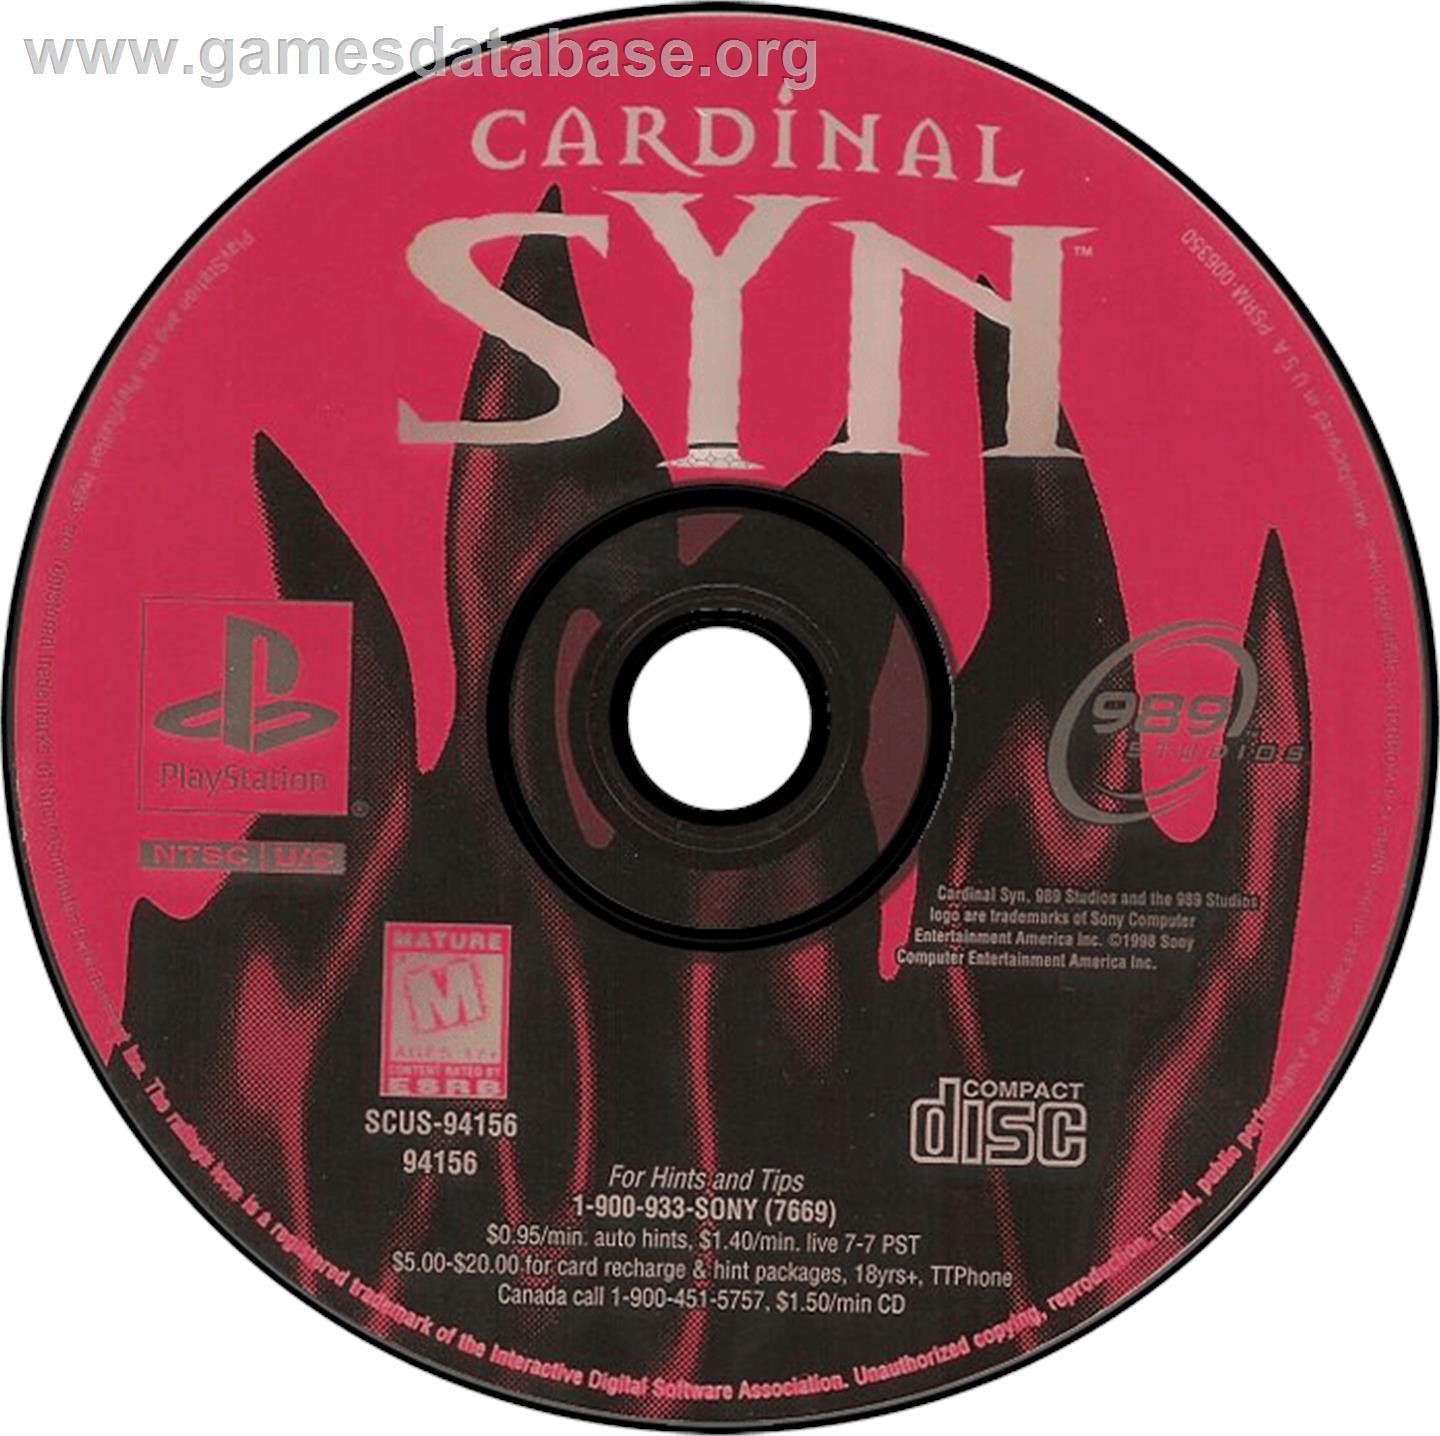 Cardinal Syn - Sony Playstation - Artwork - Disc